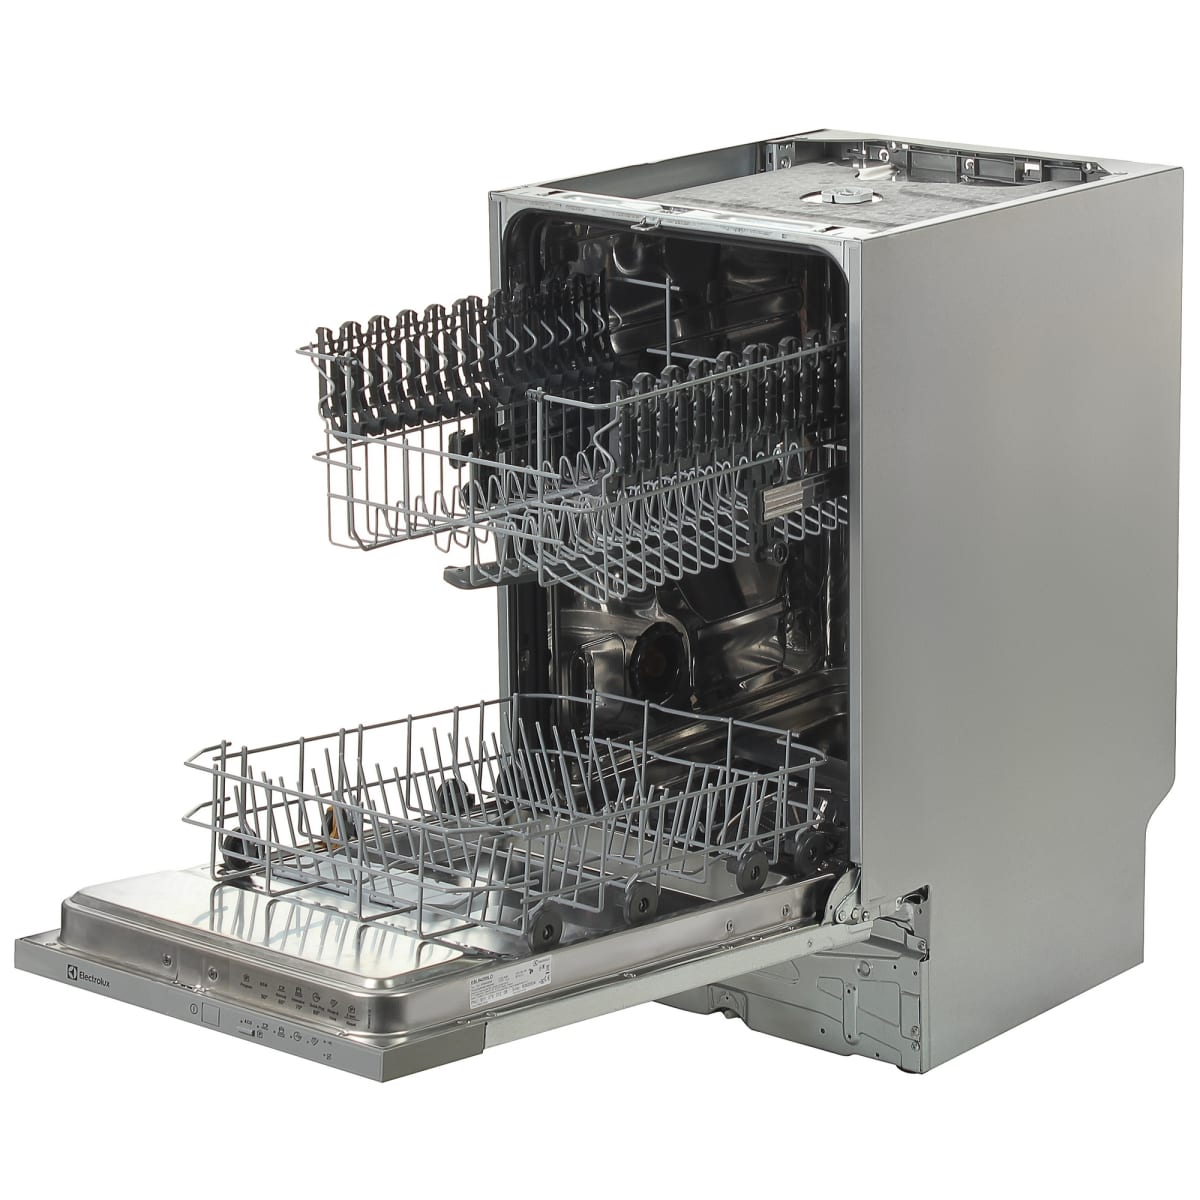 Встраиваемая посудомоечная машина Electrolux ESL-94200LO